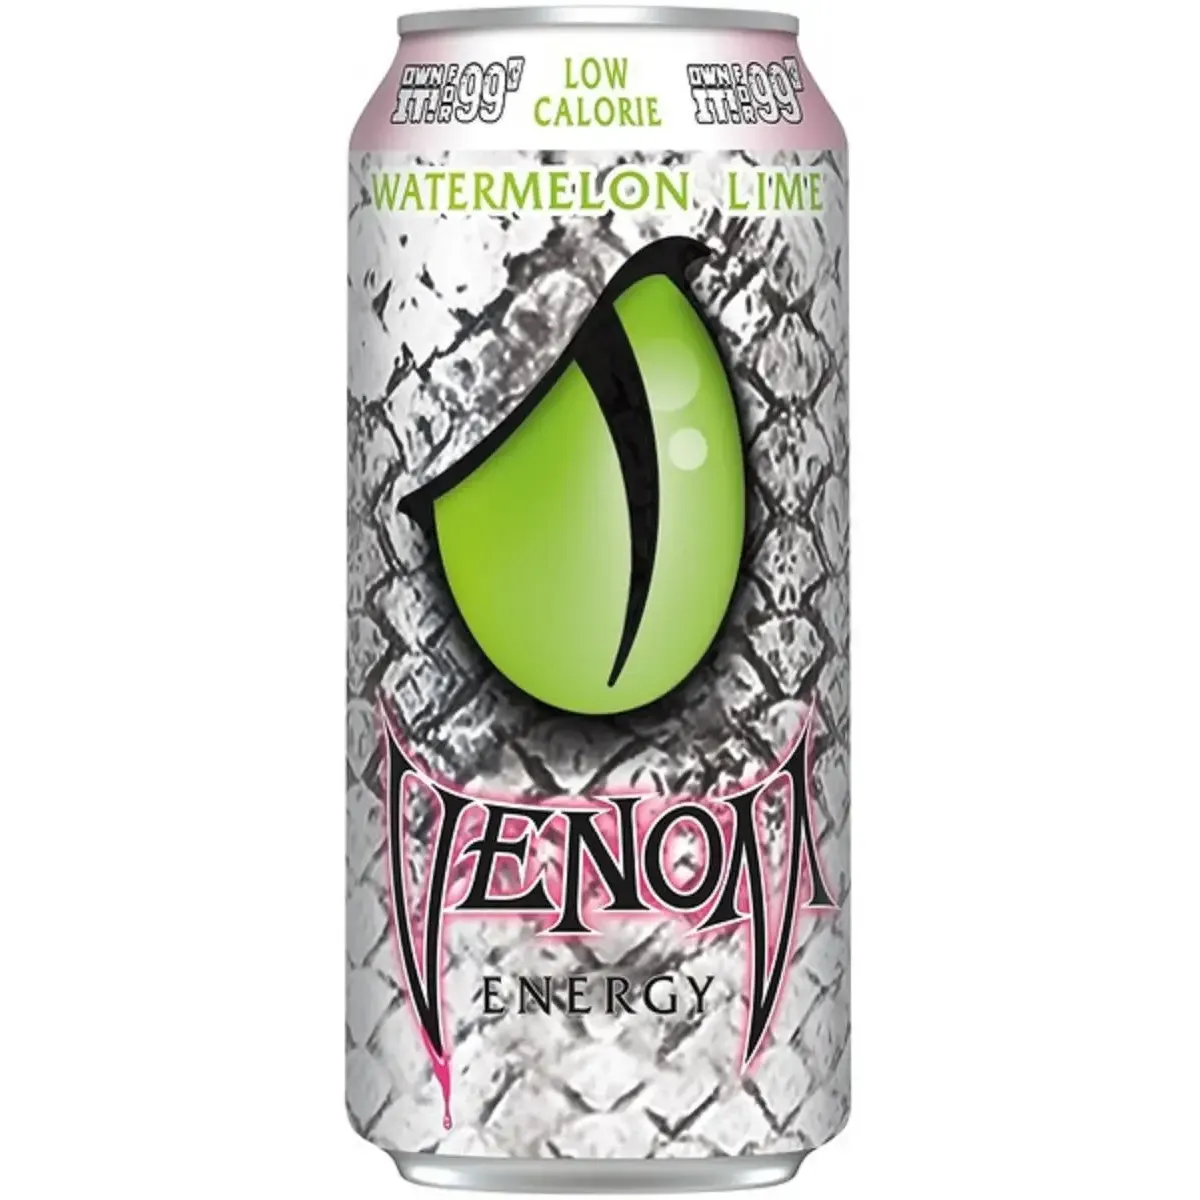 Напиток энергетический безалкогольный Venom Energy Watermelon Lime сильногазированный 0.473 л ж/б (947446) - фото 1